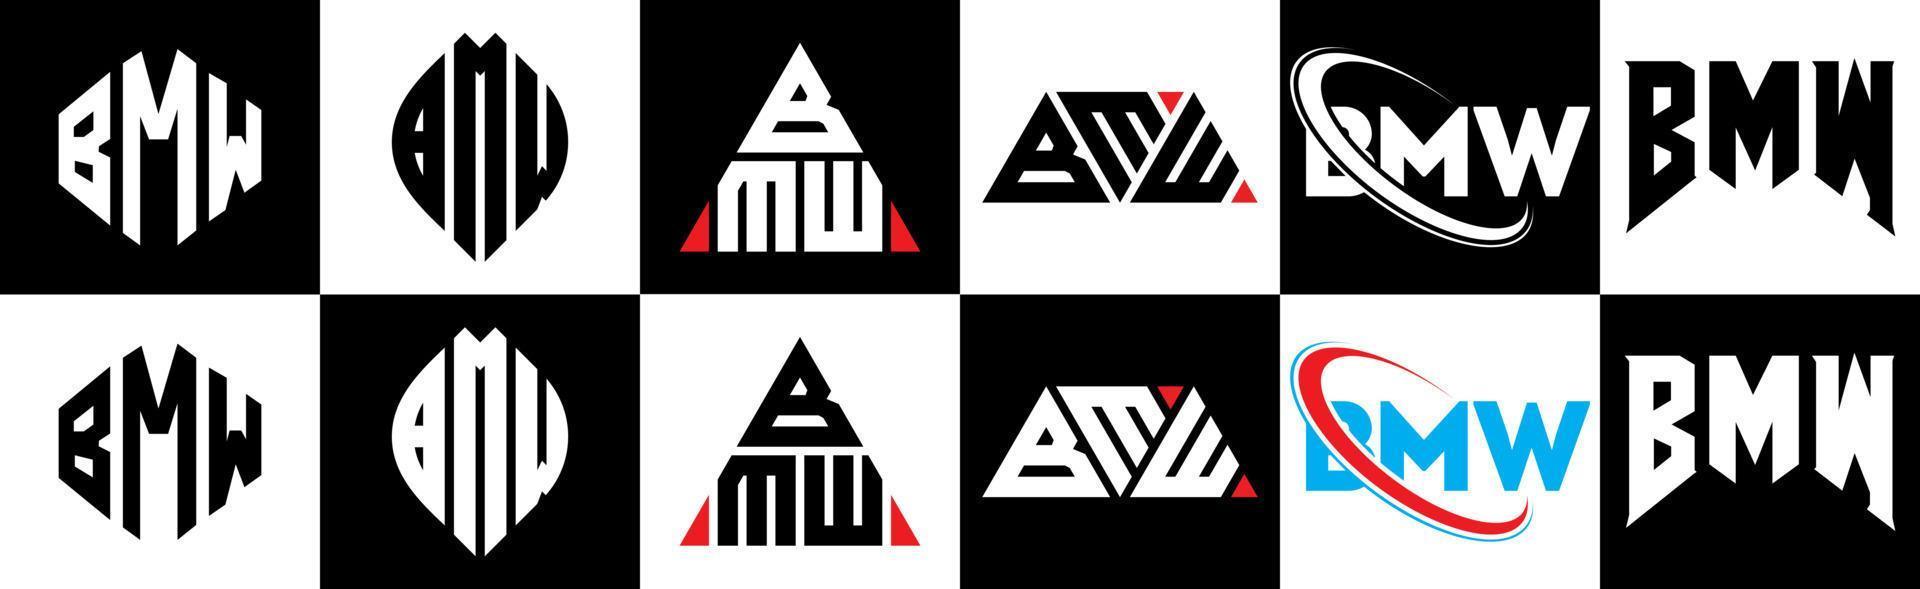 design de logotipo de letra bmw em estilo seis. polígono bmw, círculo, triângulo, hexágono, estilo plano e simples com logotipo de carta de variação de cor preto e branco definido em uma prancheta. logotipo minimalista e clássico da bmw vetor